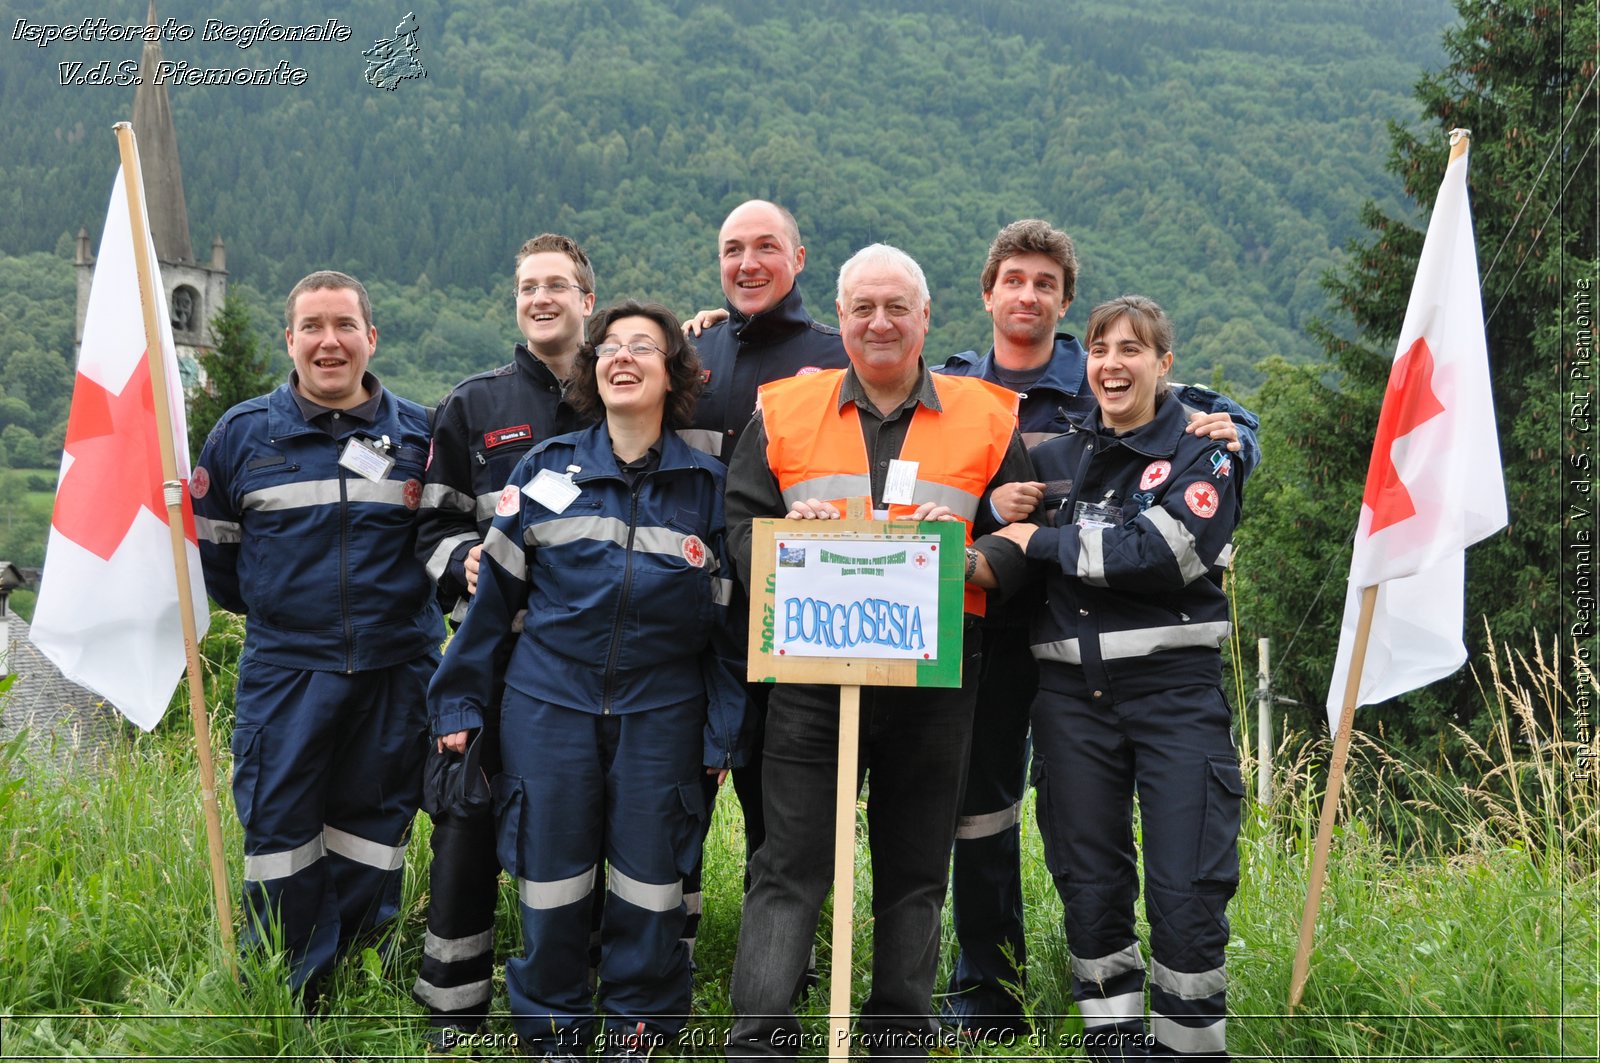 Baceno - 11 giugno 2011 - Gara Provinciale VCO di soccorso -  Croce Rossa Italiana - Ispettorato Regionale Volontari del Soccorso Piemonte